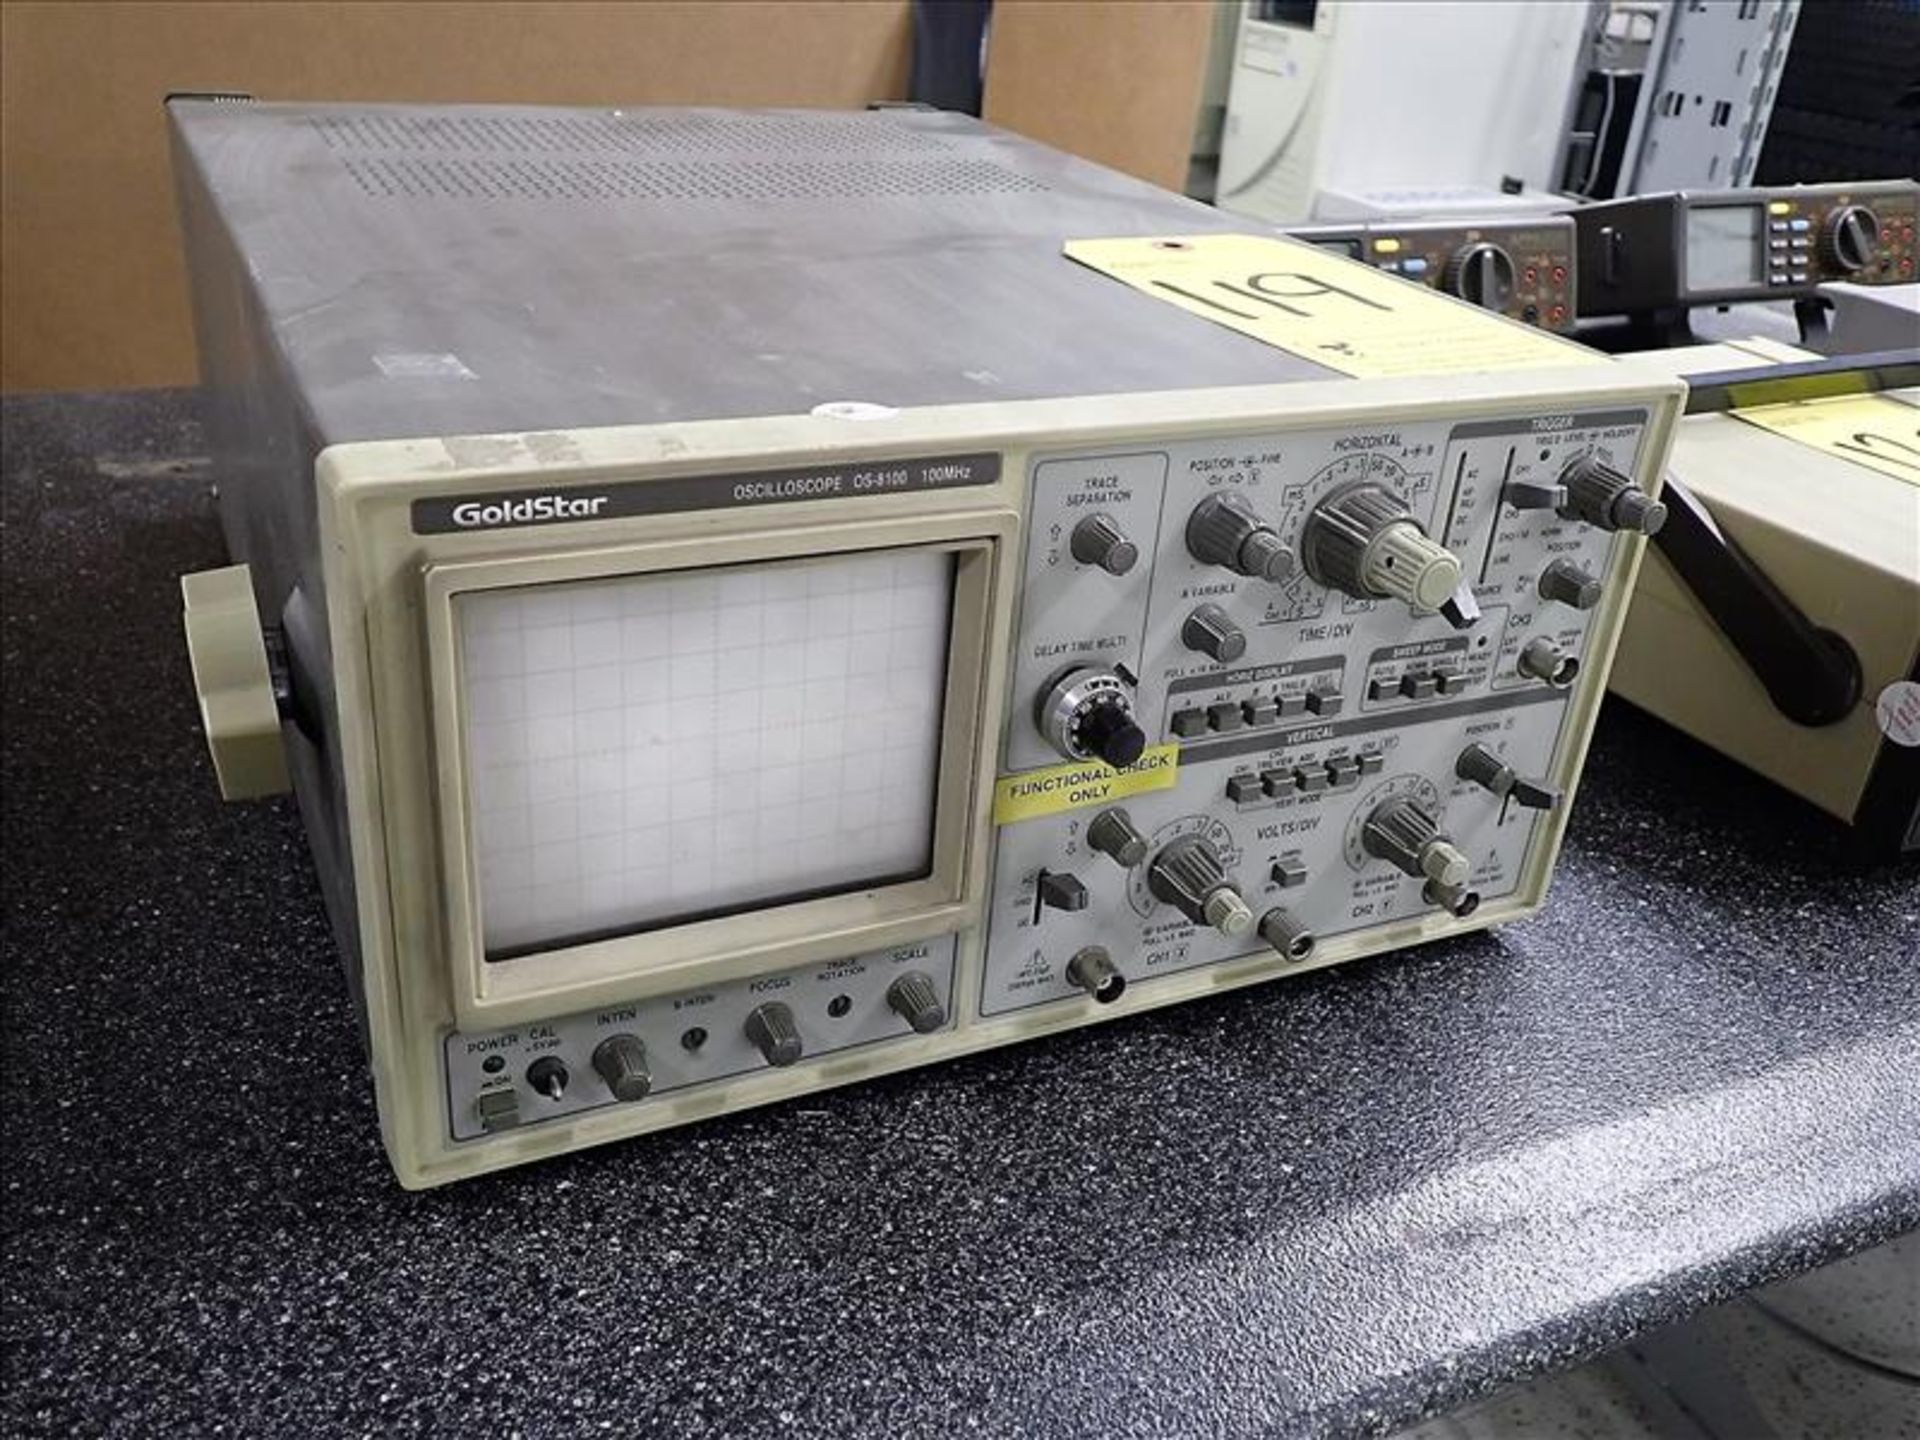 GoldStar Oscilloscope, mod. OS-8100, ser. no. 2020064